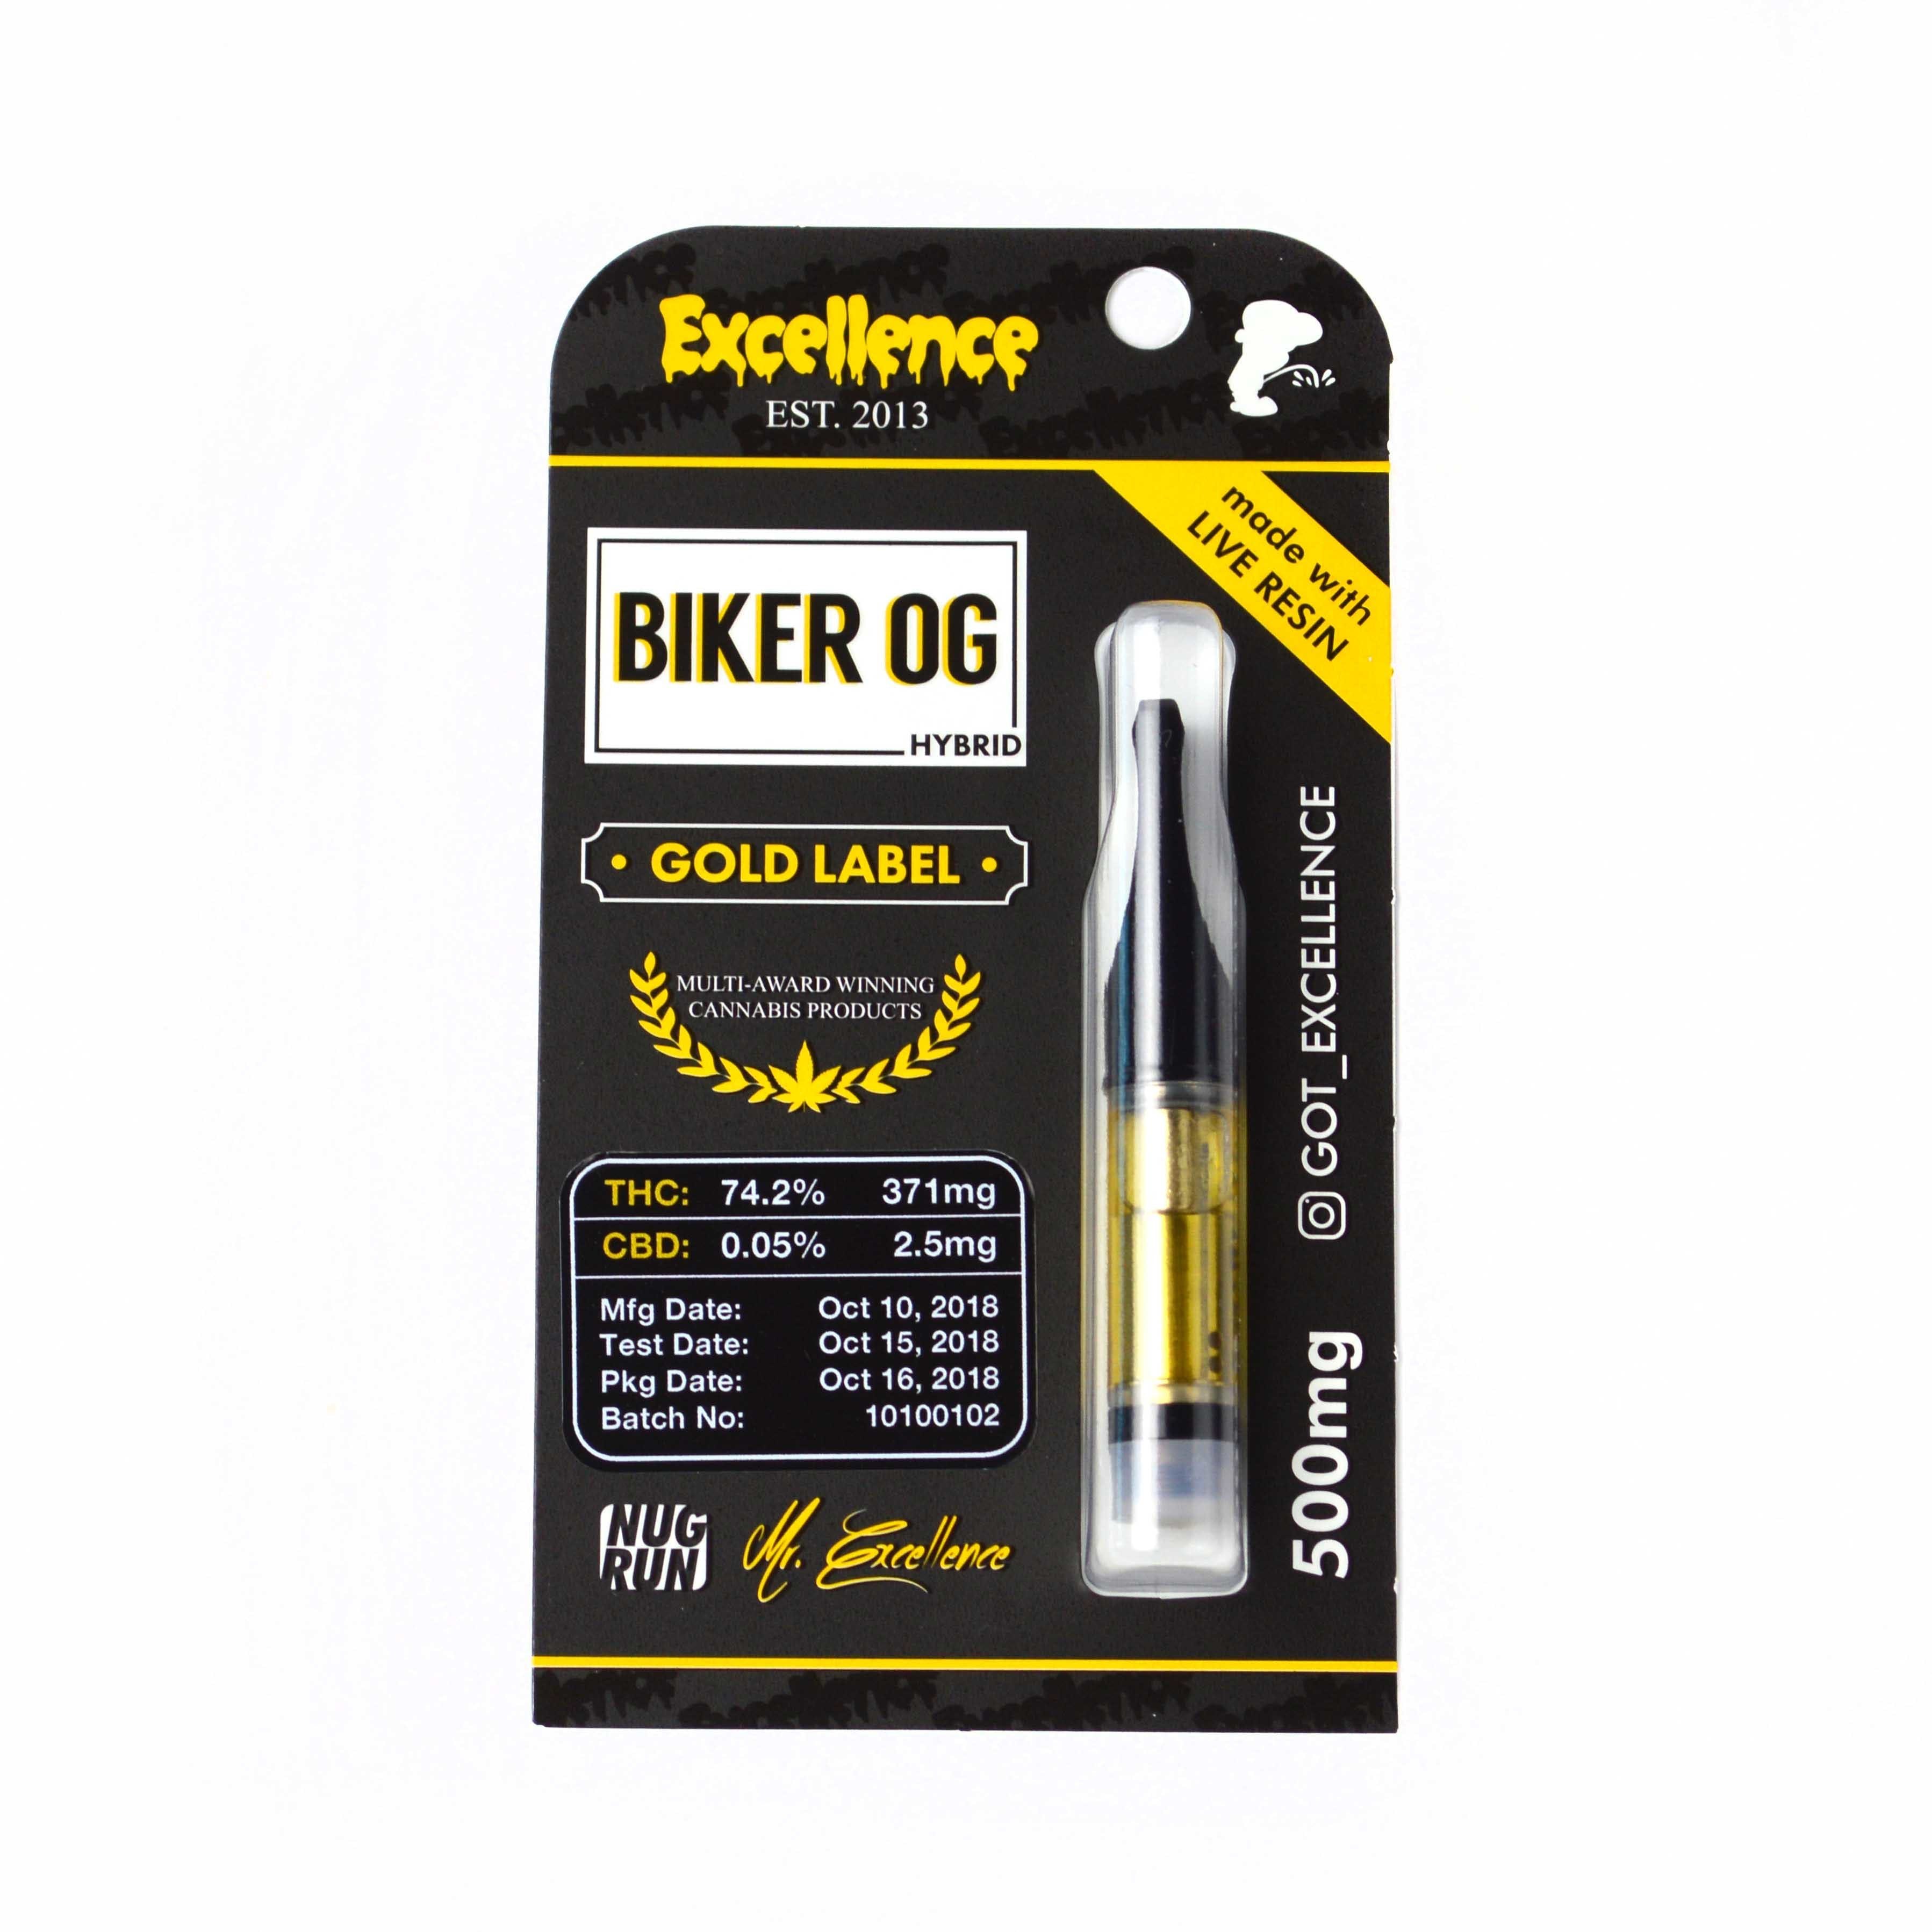 concentrate-excellence-biker-og-gold-label-cartridge